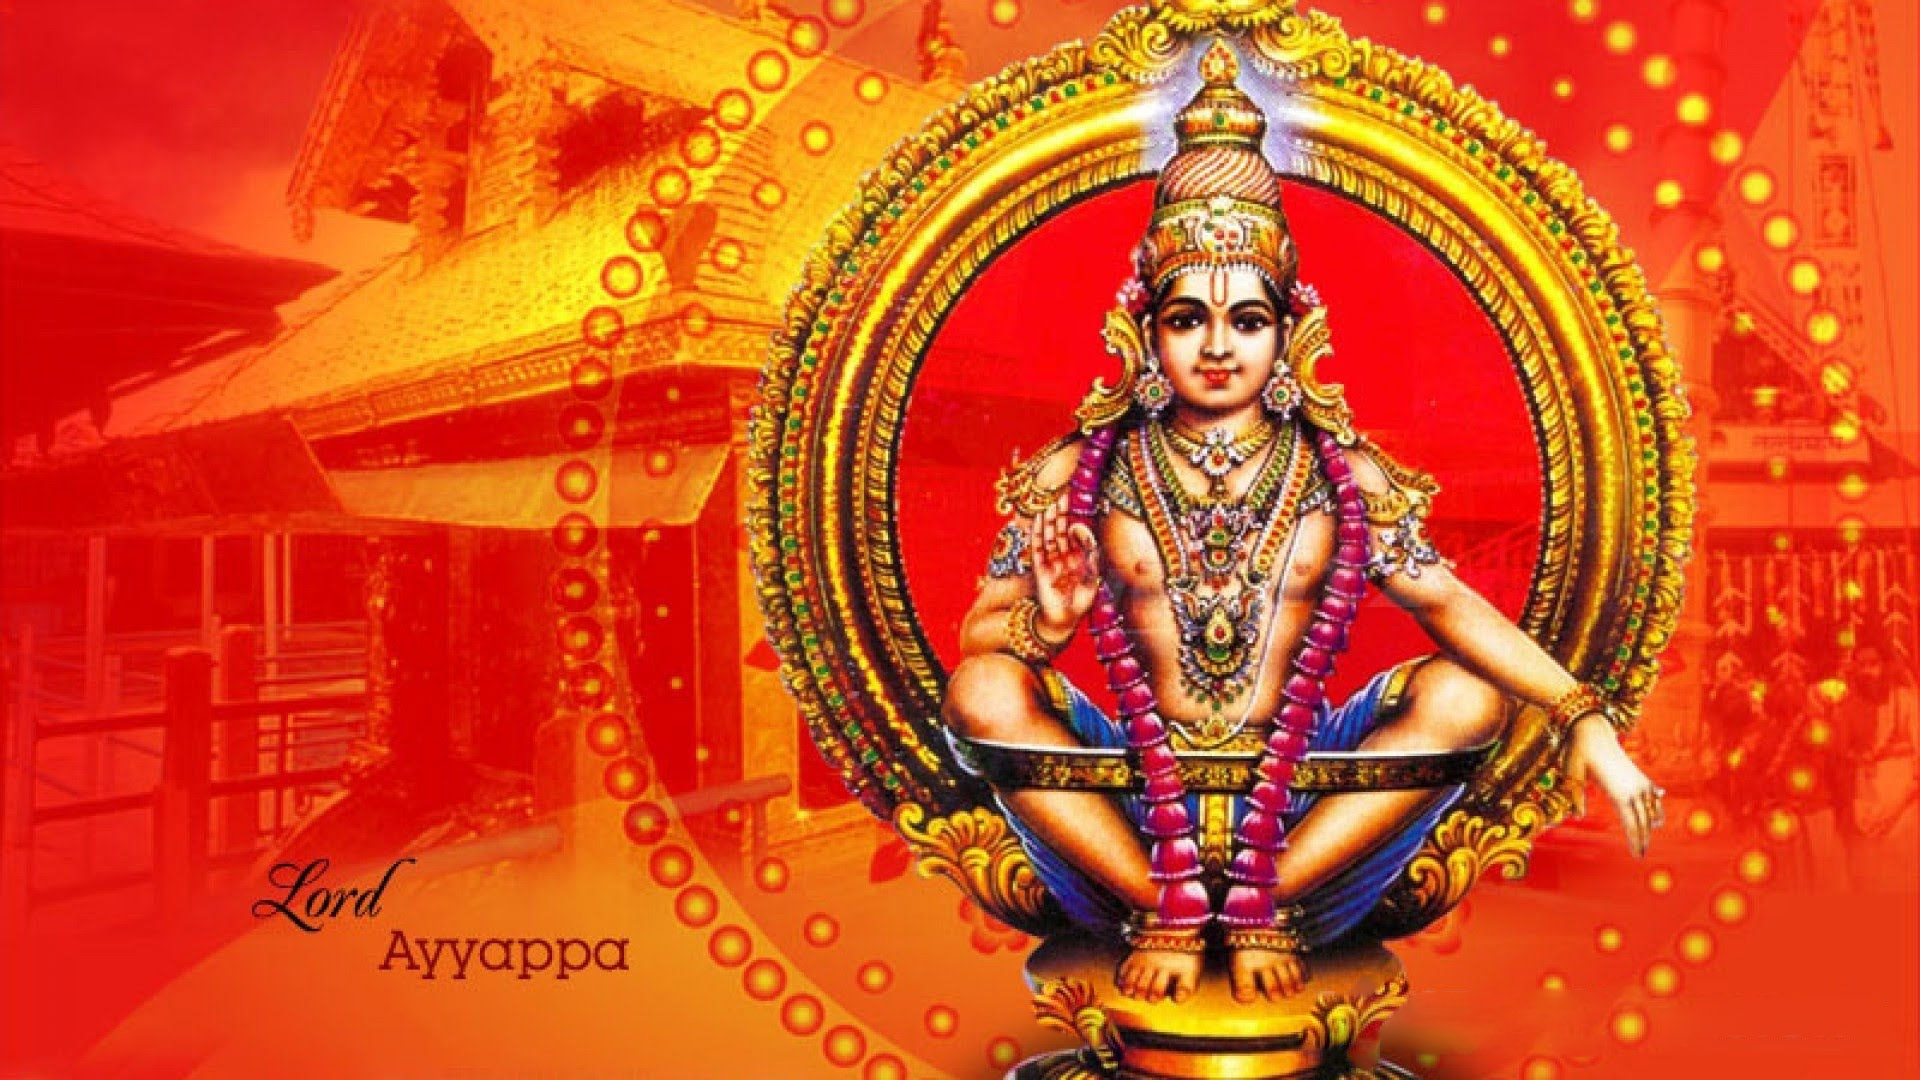 Ayyappa 1080p Hd Images | Hindu Gods and Goddesses